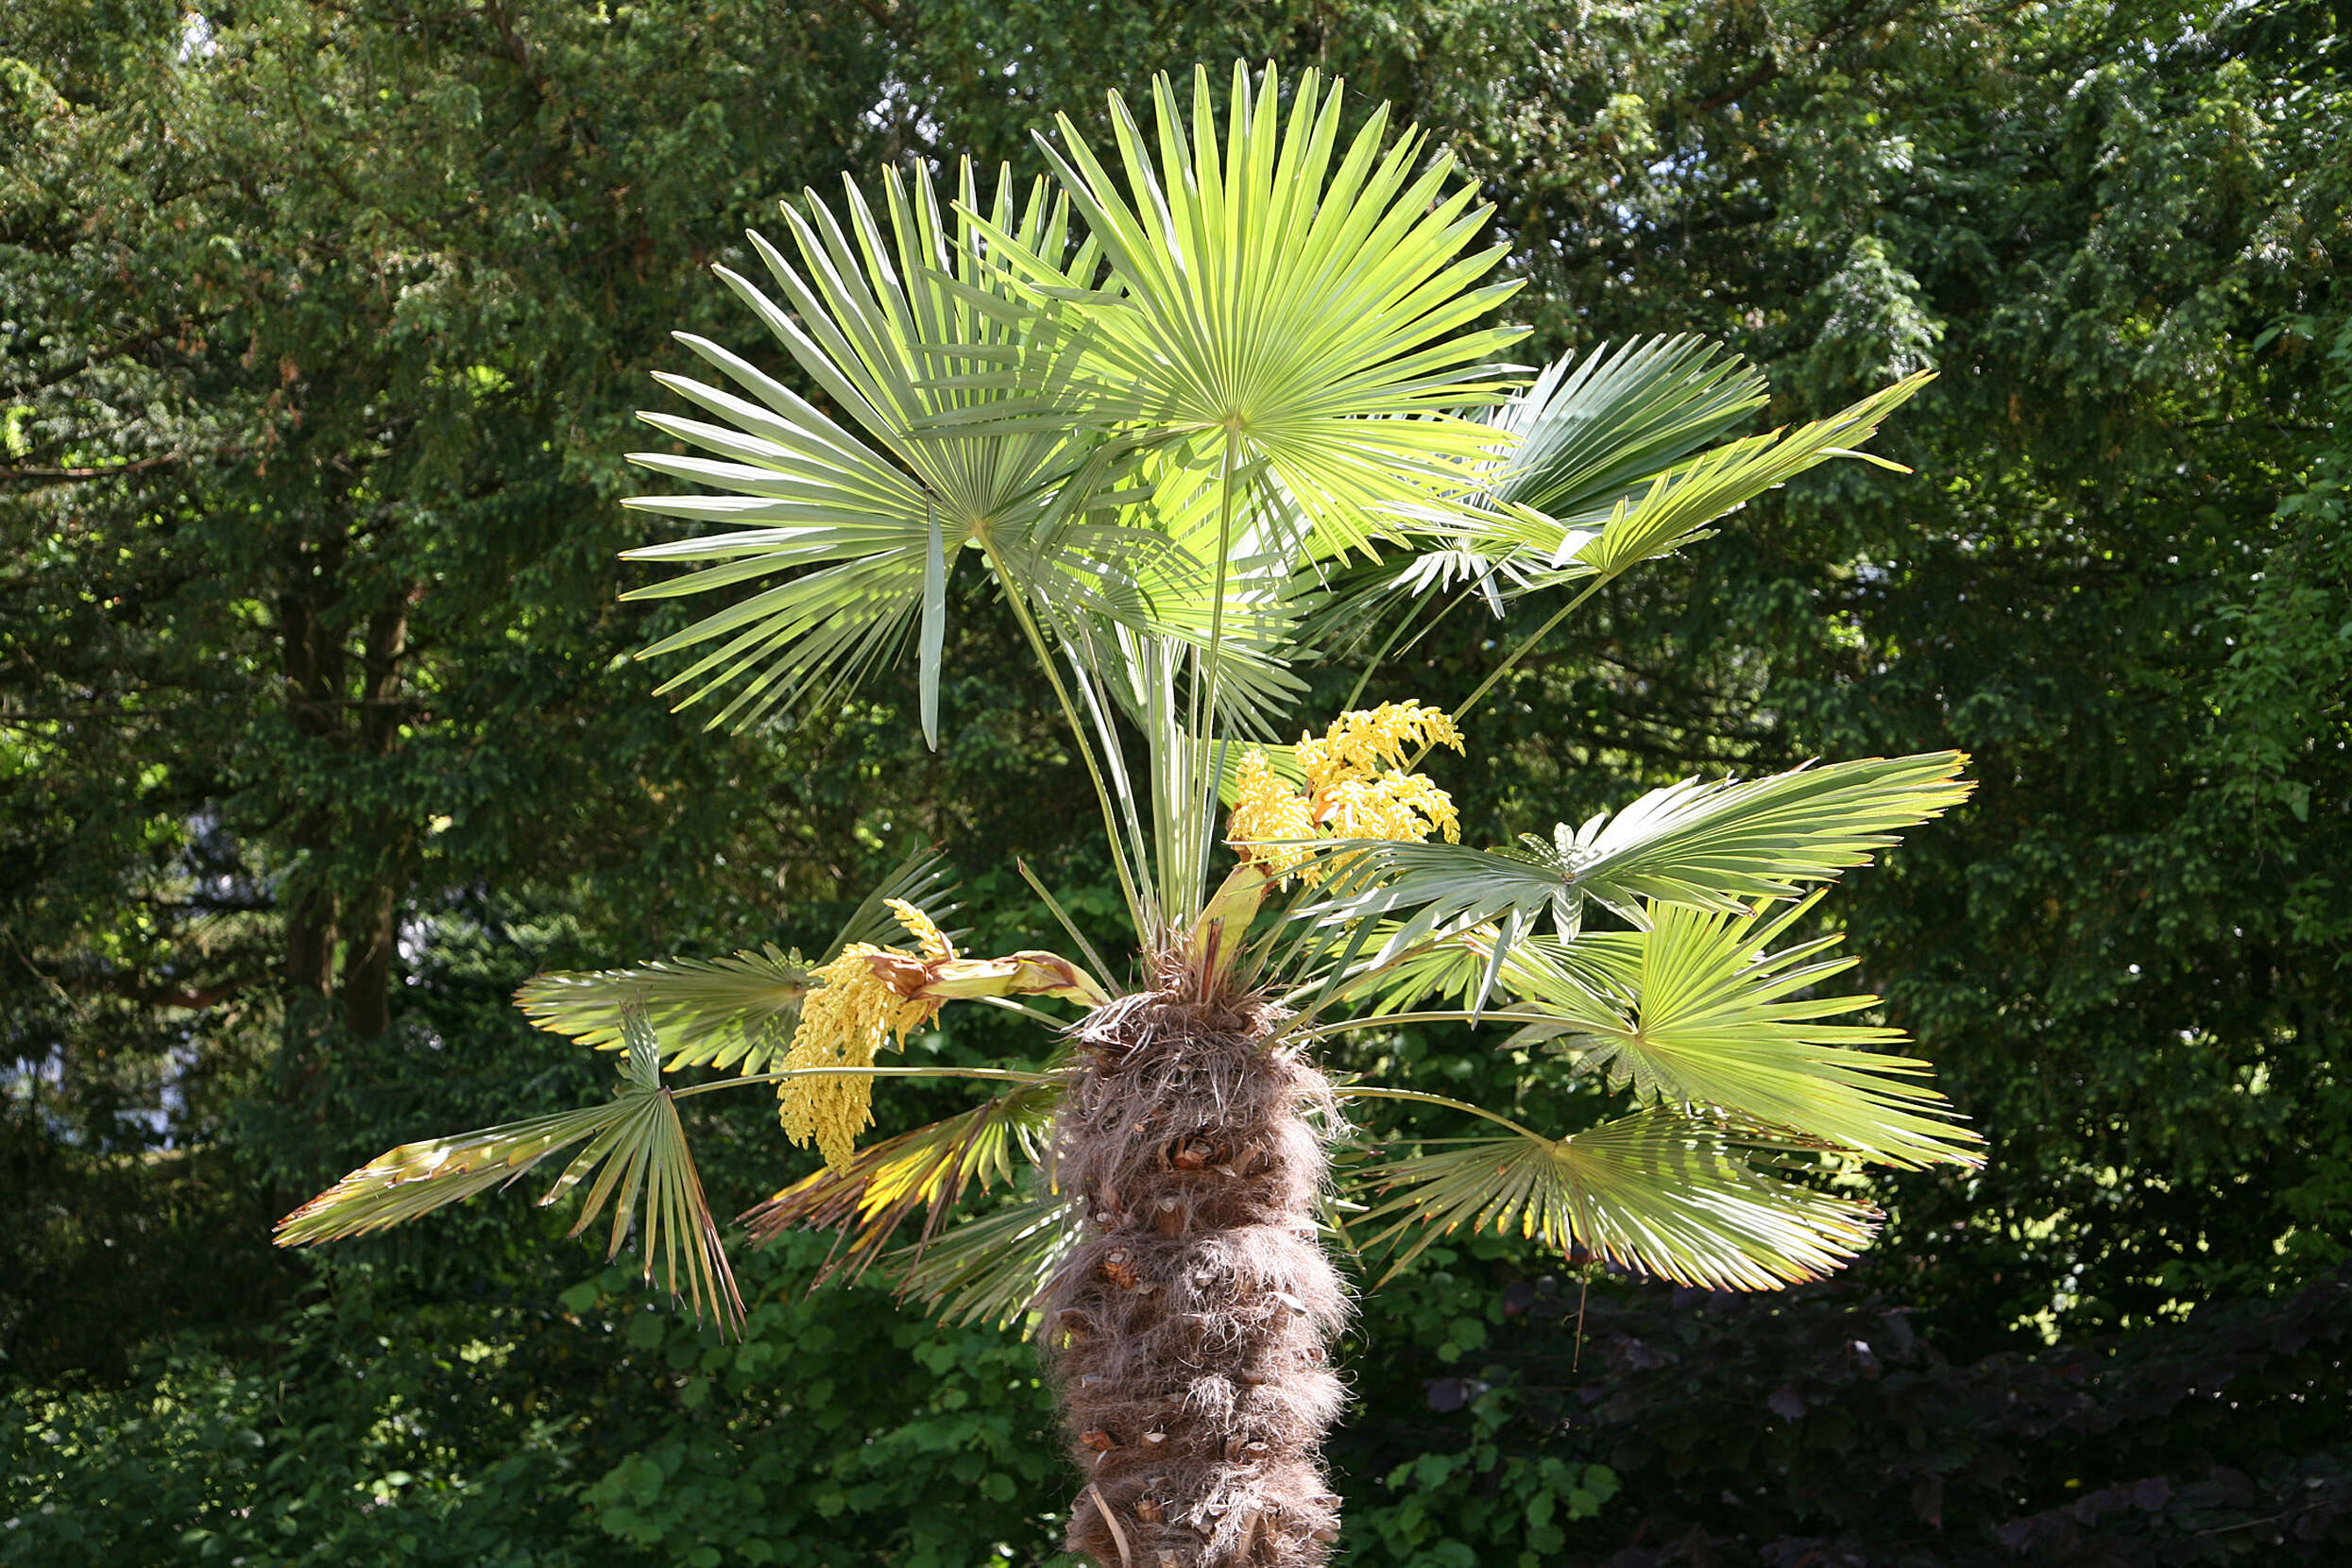 Image of Chinese windmill palm